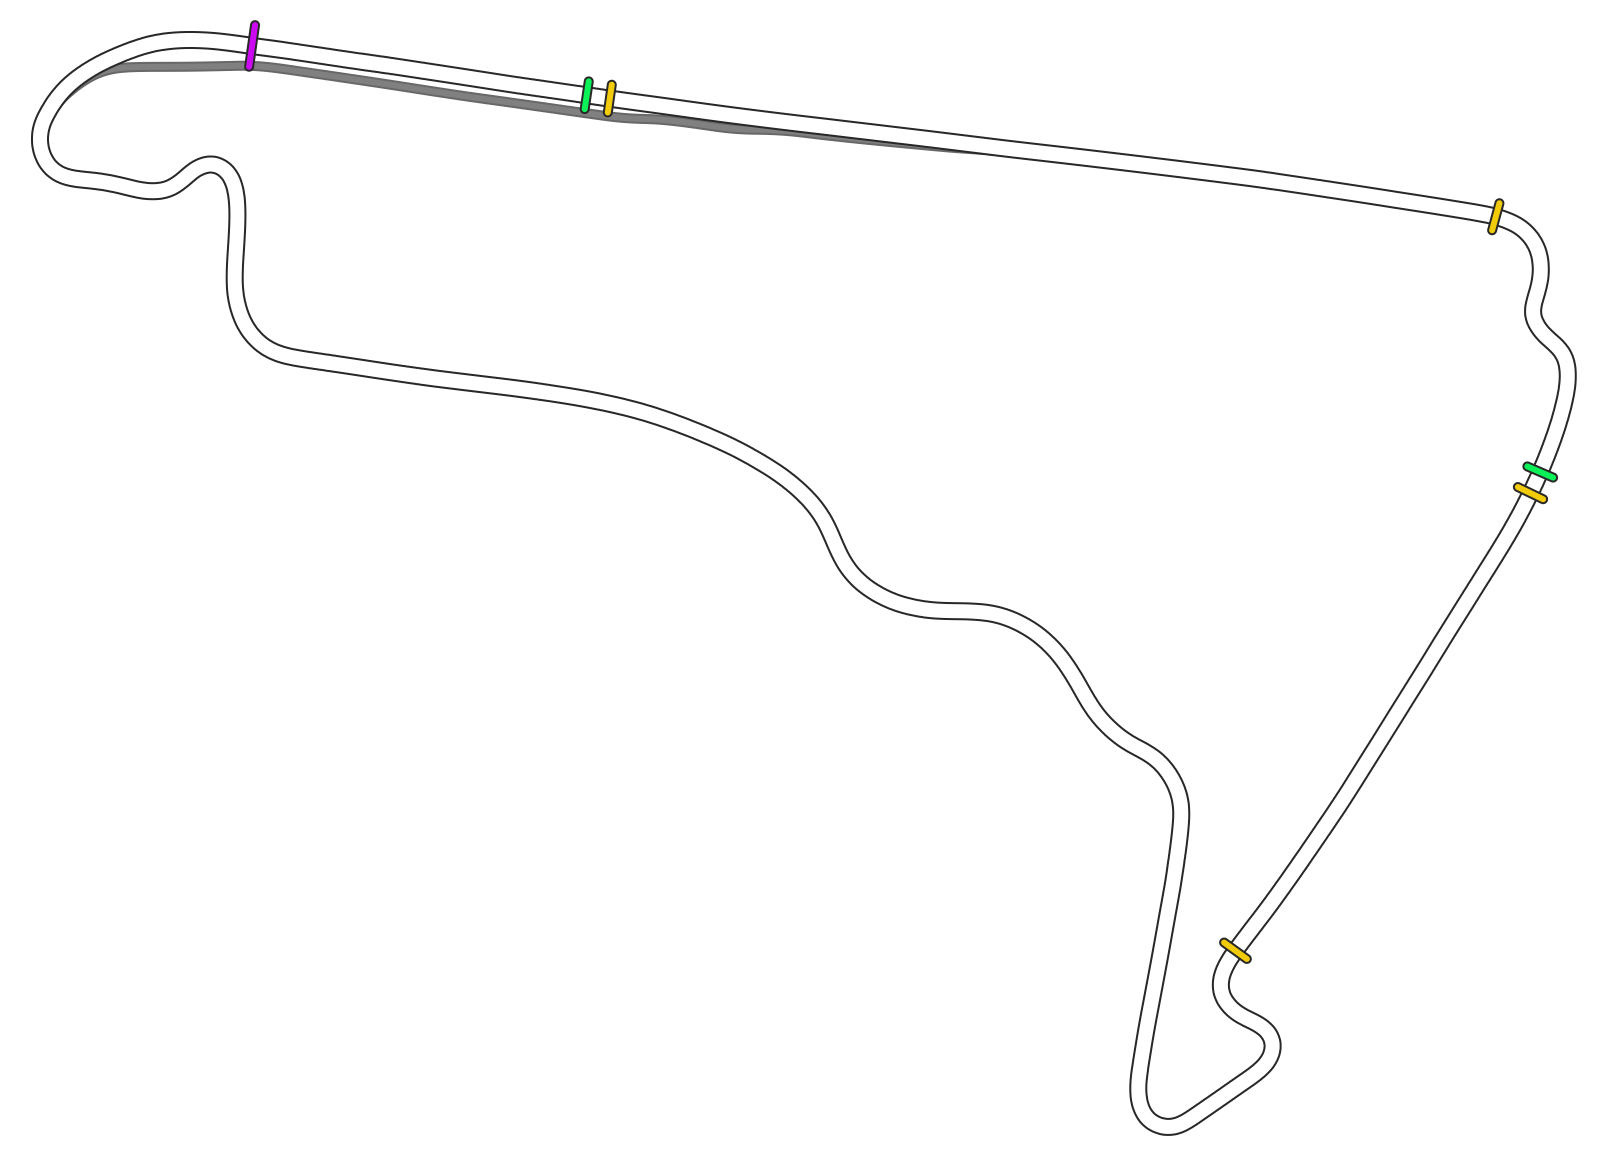 Mexican Grand Prix OSRW - Dix Racing